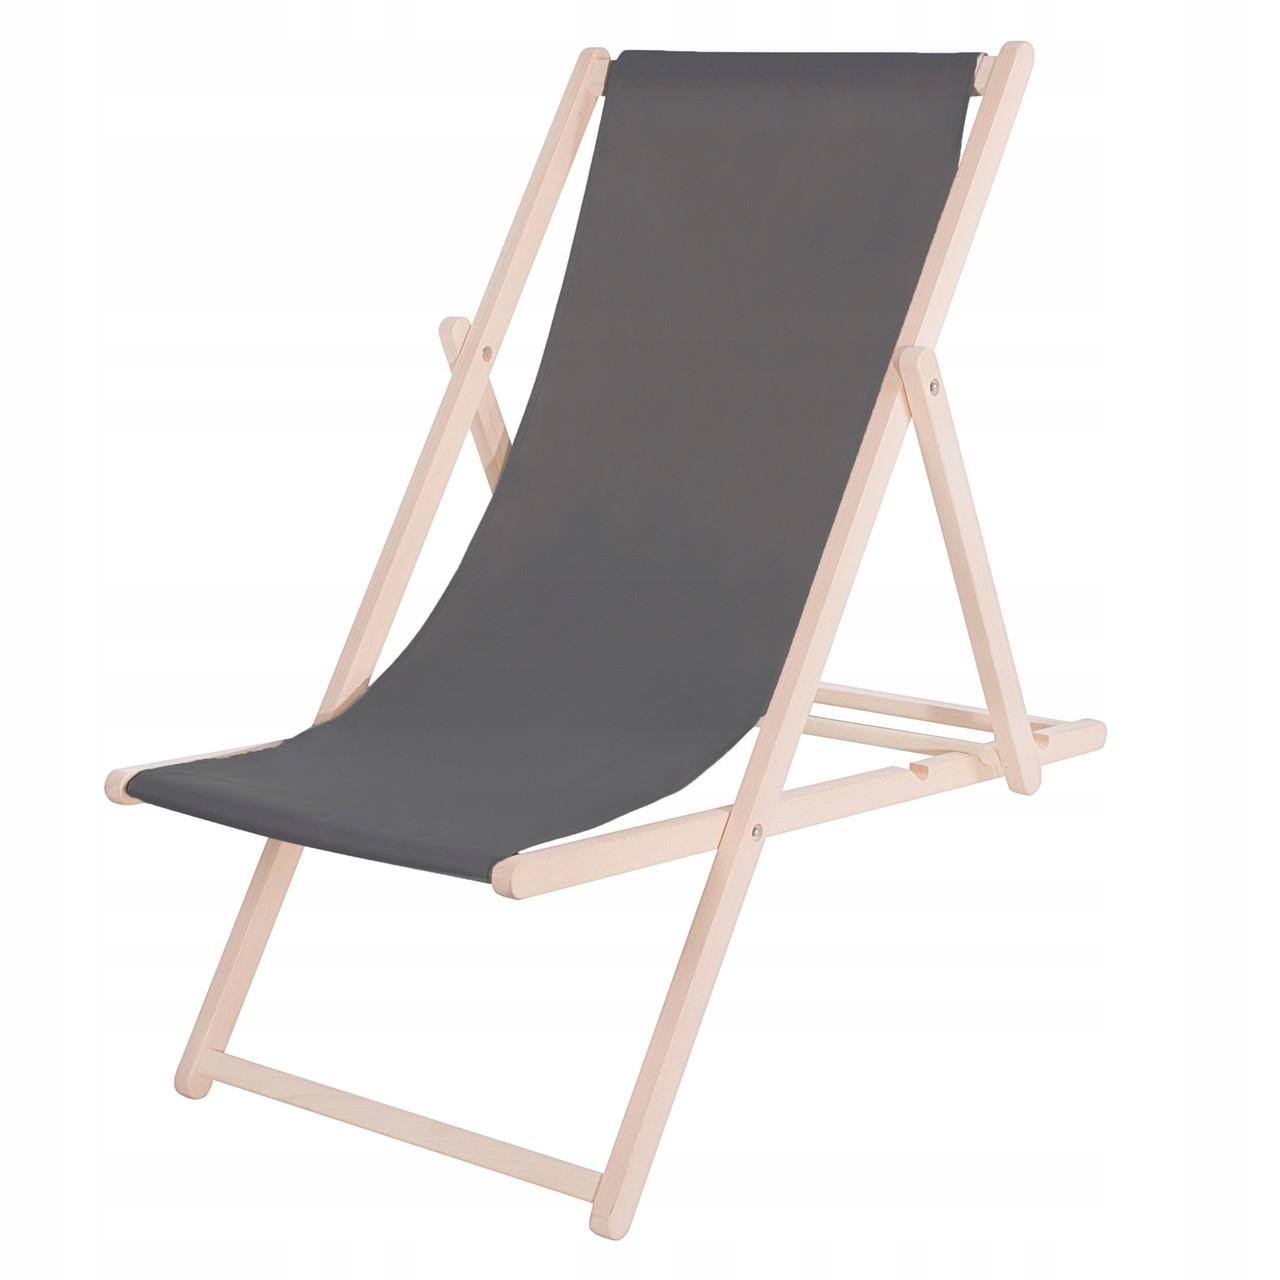 Шезлонг (кресло-лежак) деревянный для пляжа, террасы и сада Springos DC0001 GR alli ОРИГИНАЛ